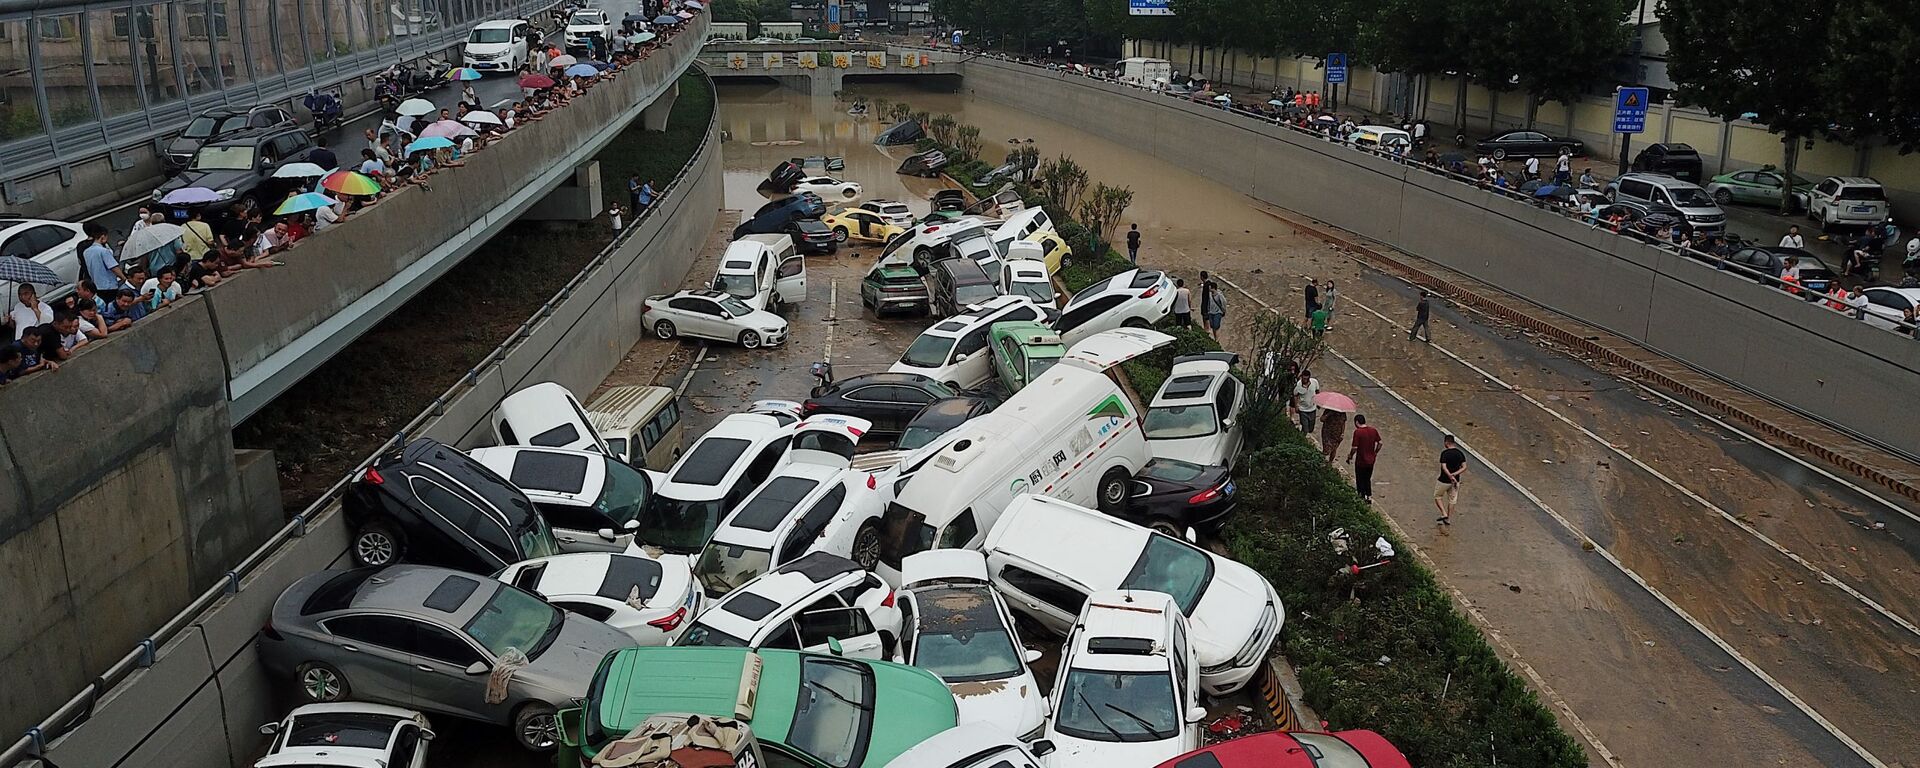 منظر جوي لآثار الفيضانات الناجمة عن أمطار غزيرة في مدينة تشنغتشو، وسط محافظة هينان، الصين 22 يوليو 2021 - سبوتنيك عربي, 1920, 17.08.2021